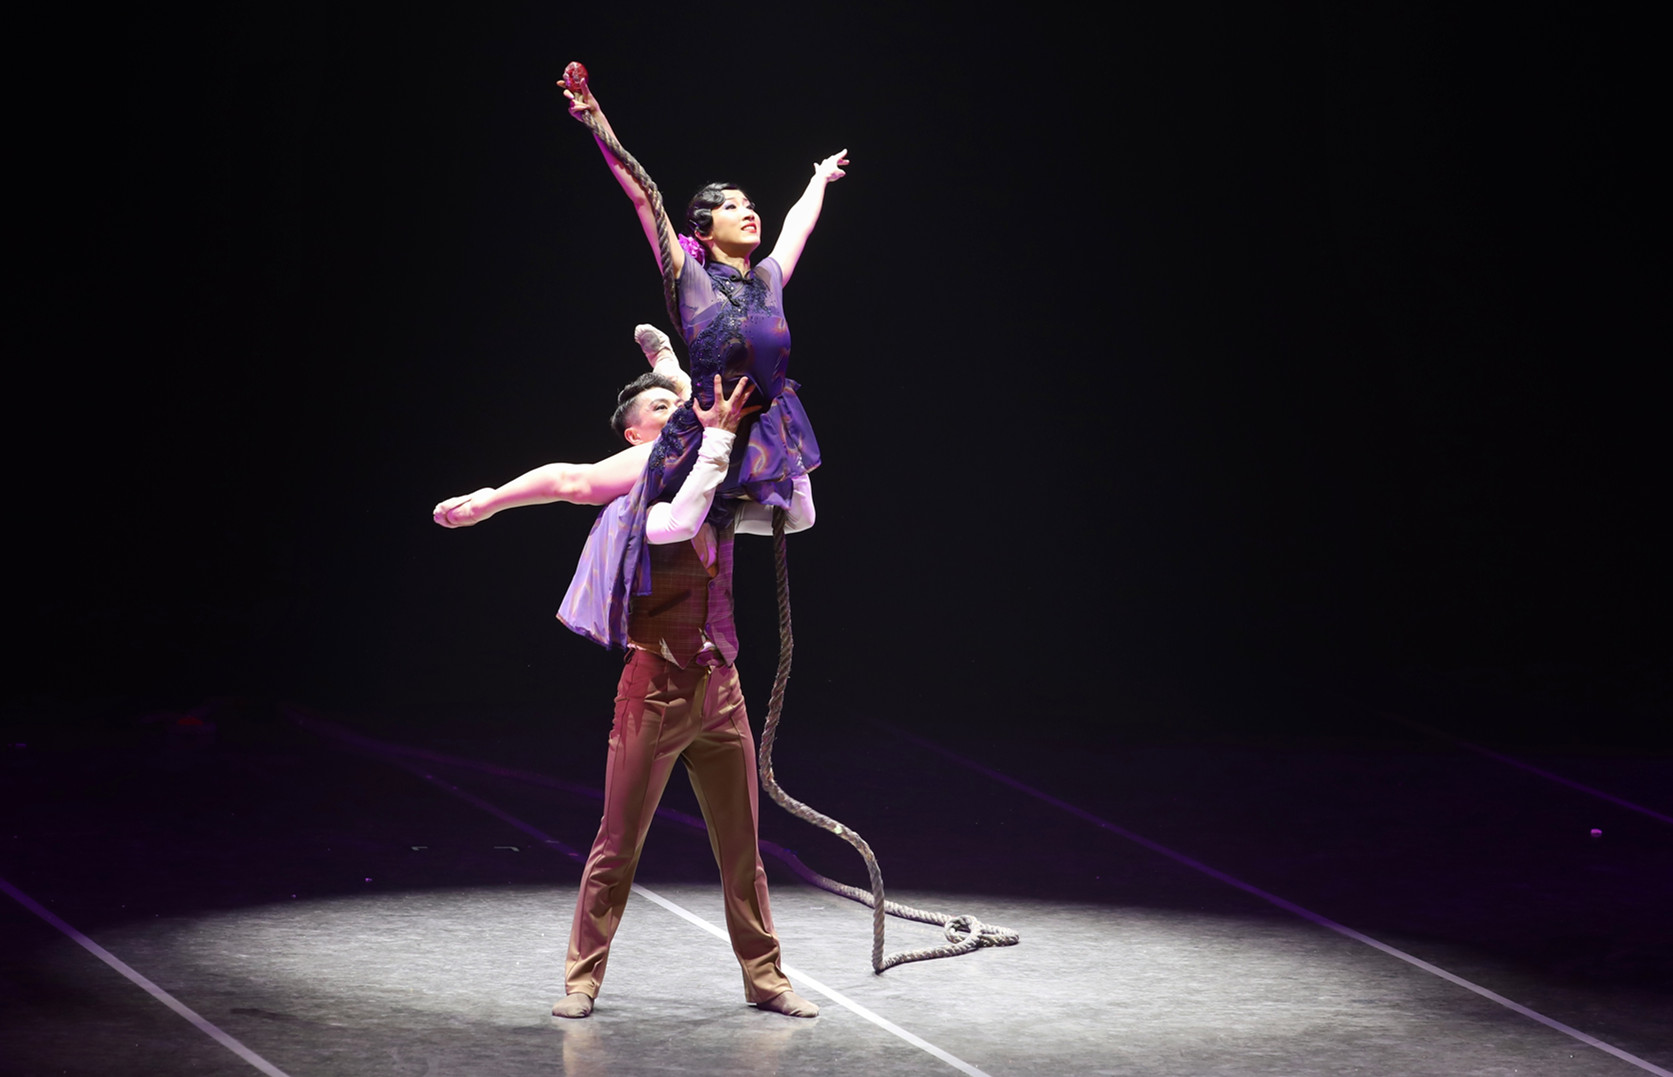 马林斯基第16届国际芭蕾舞节闭幕Gala中“Talisman”双人舞 - 舞蹈图片 - Powered by Discuz!